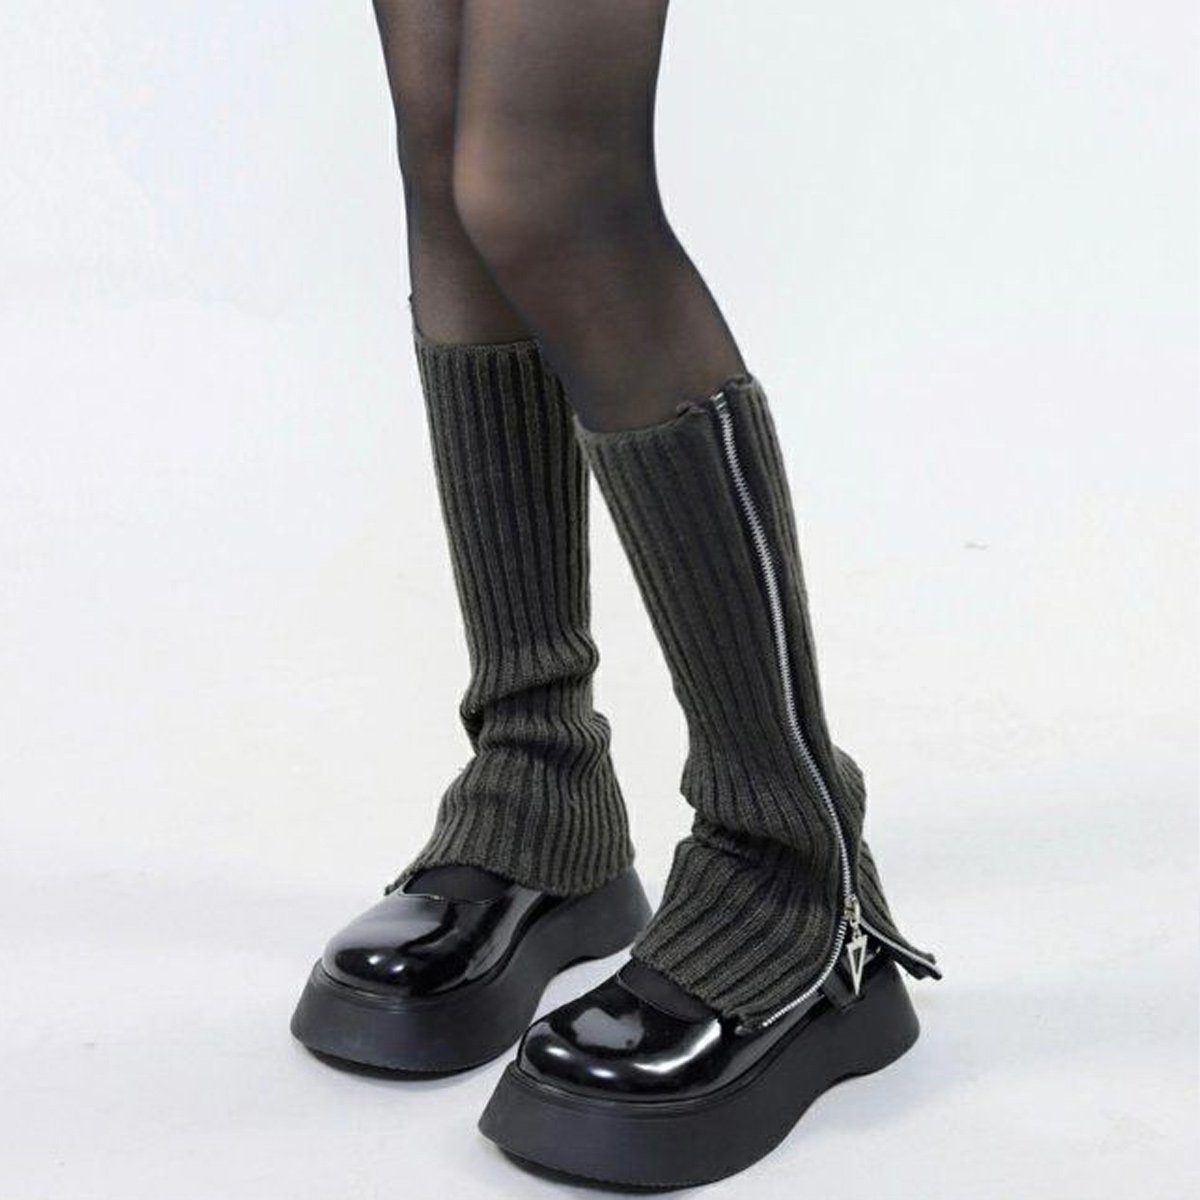 Beinstulpen Lolita Socken gestrickte lange Jormftte Zehensocken Dunkelgrau Beinstulpen Kniehohe Damen